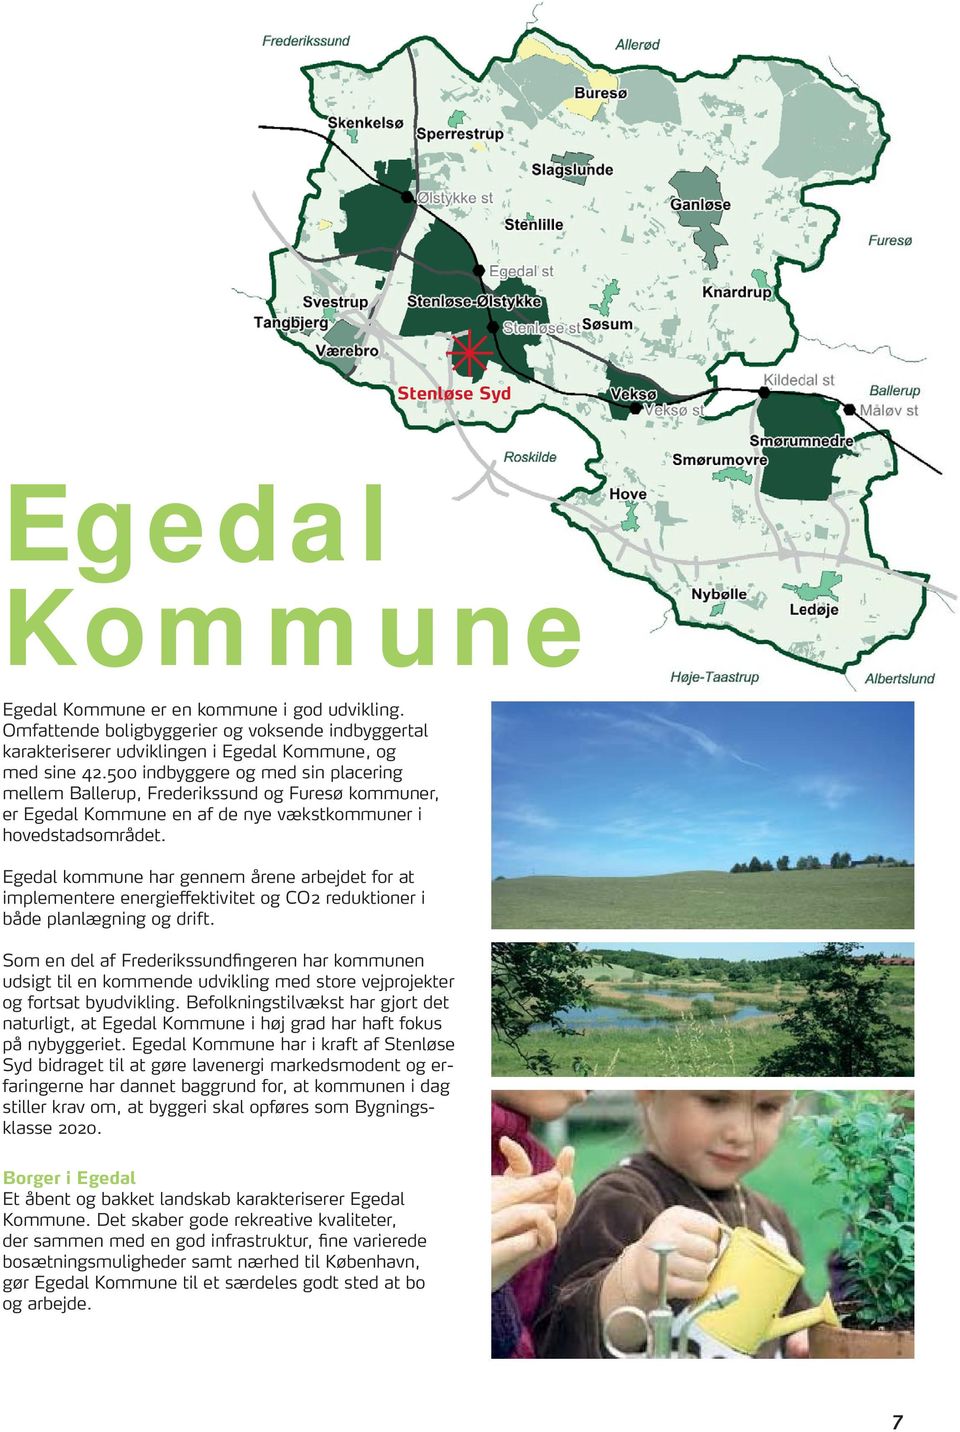 Egedal kommune har gennem årene arbejdet for at implementere energieffektivitet og CO2 reduktioner i både planlægning og drift.